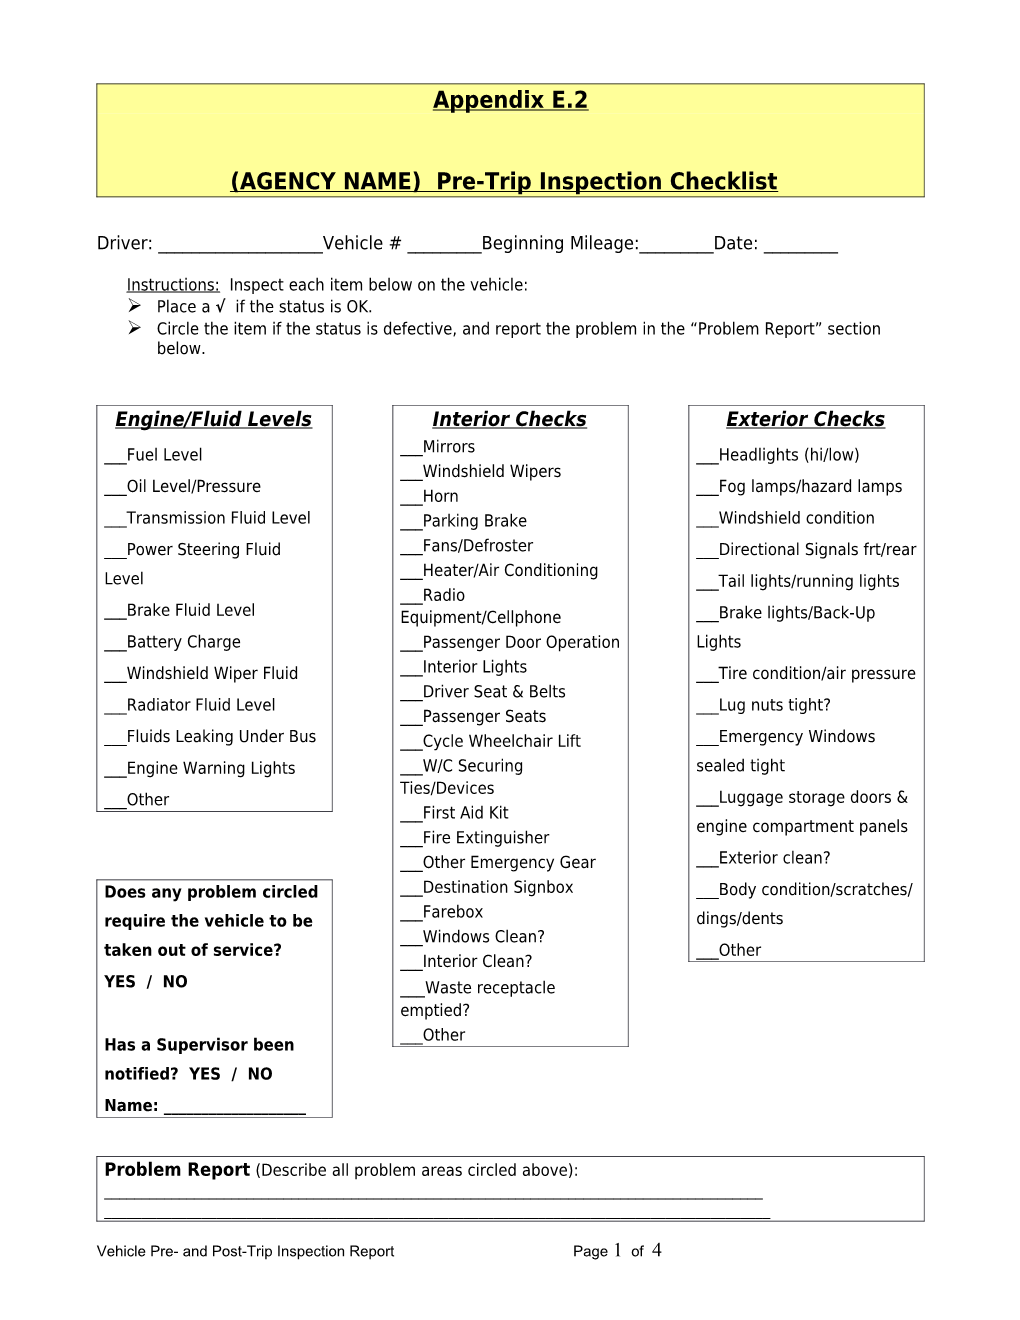 (AGENCY) Pre-Trip Inspection Checklist